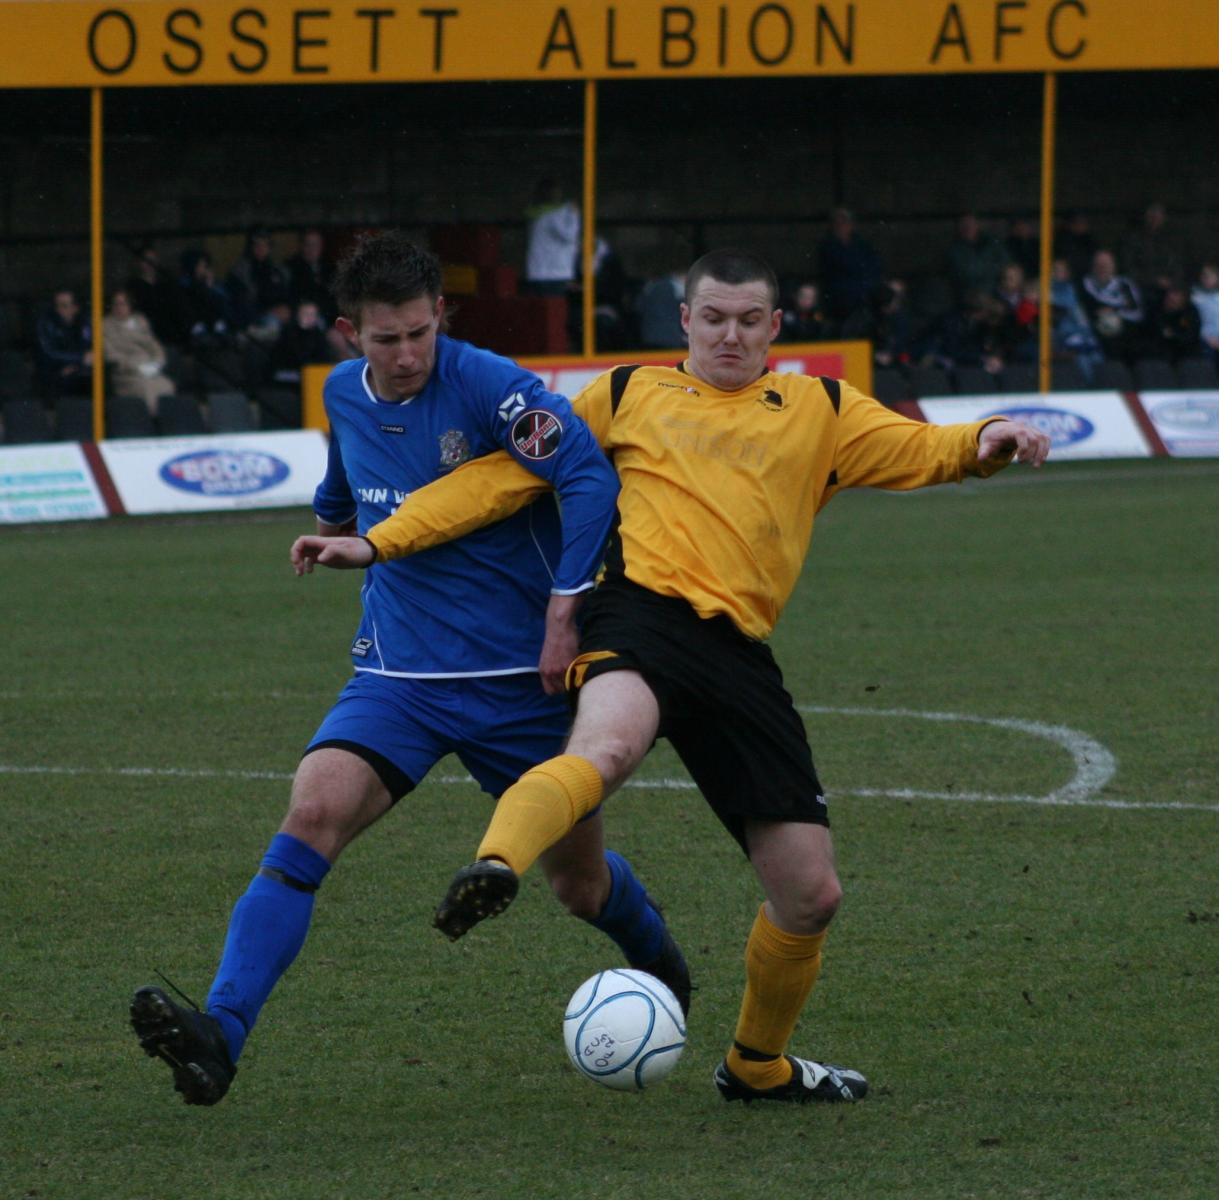 2008 Ossett Albion v Radcliffe Borough